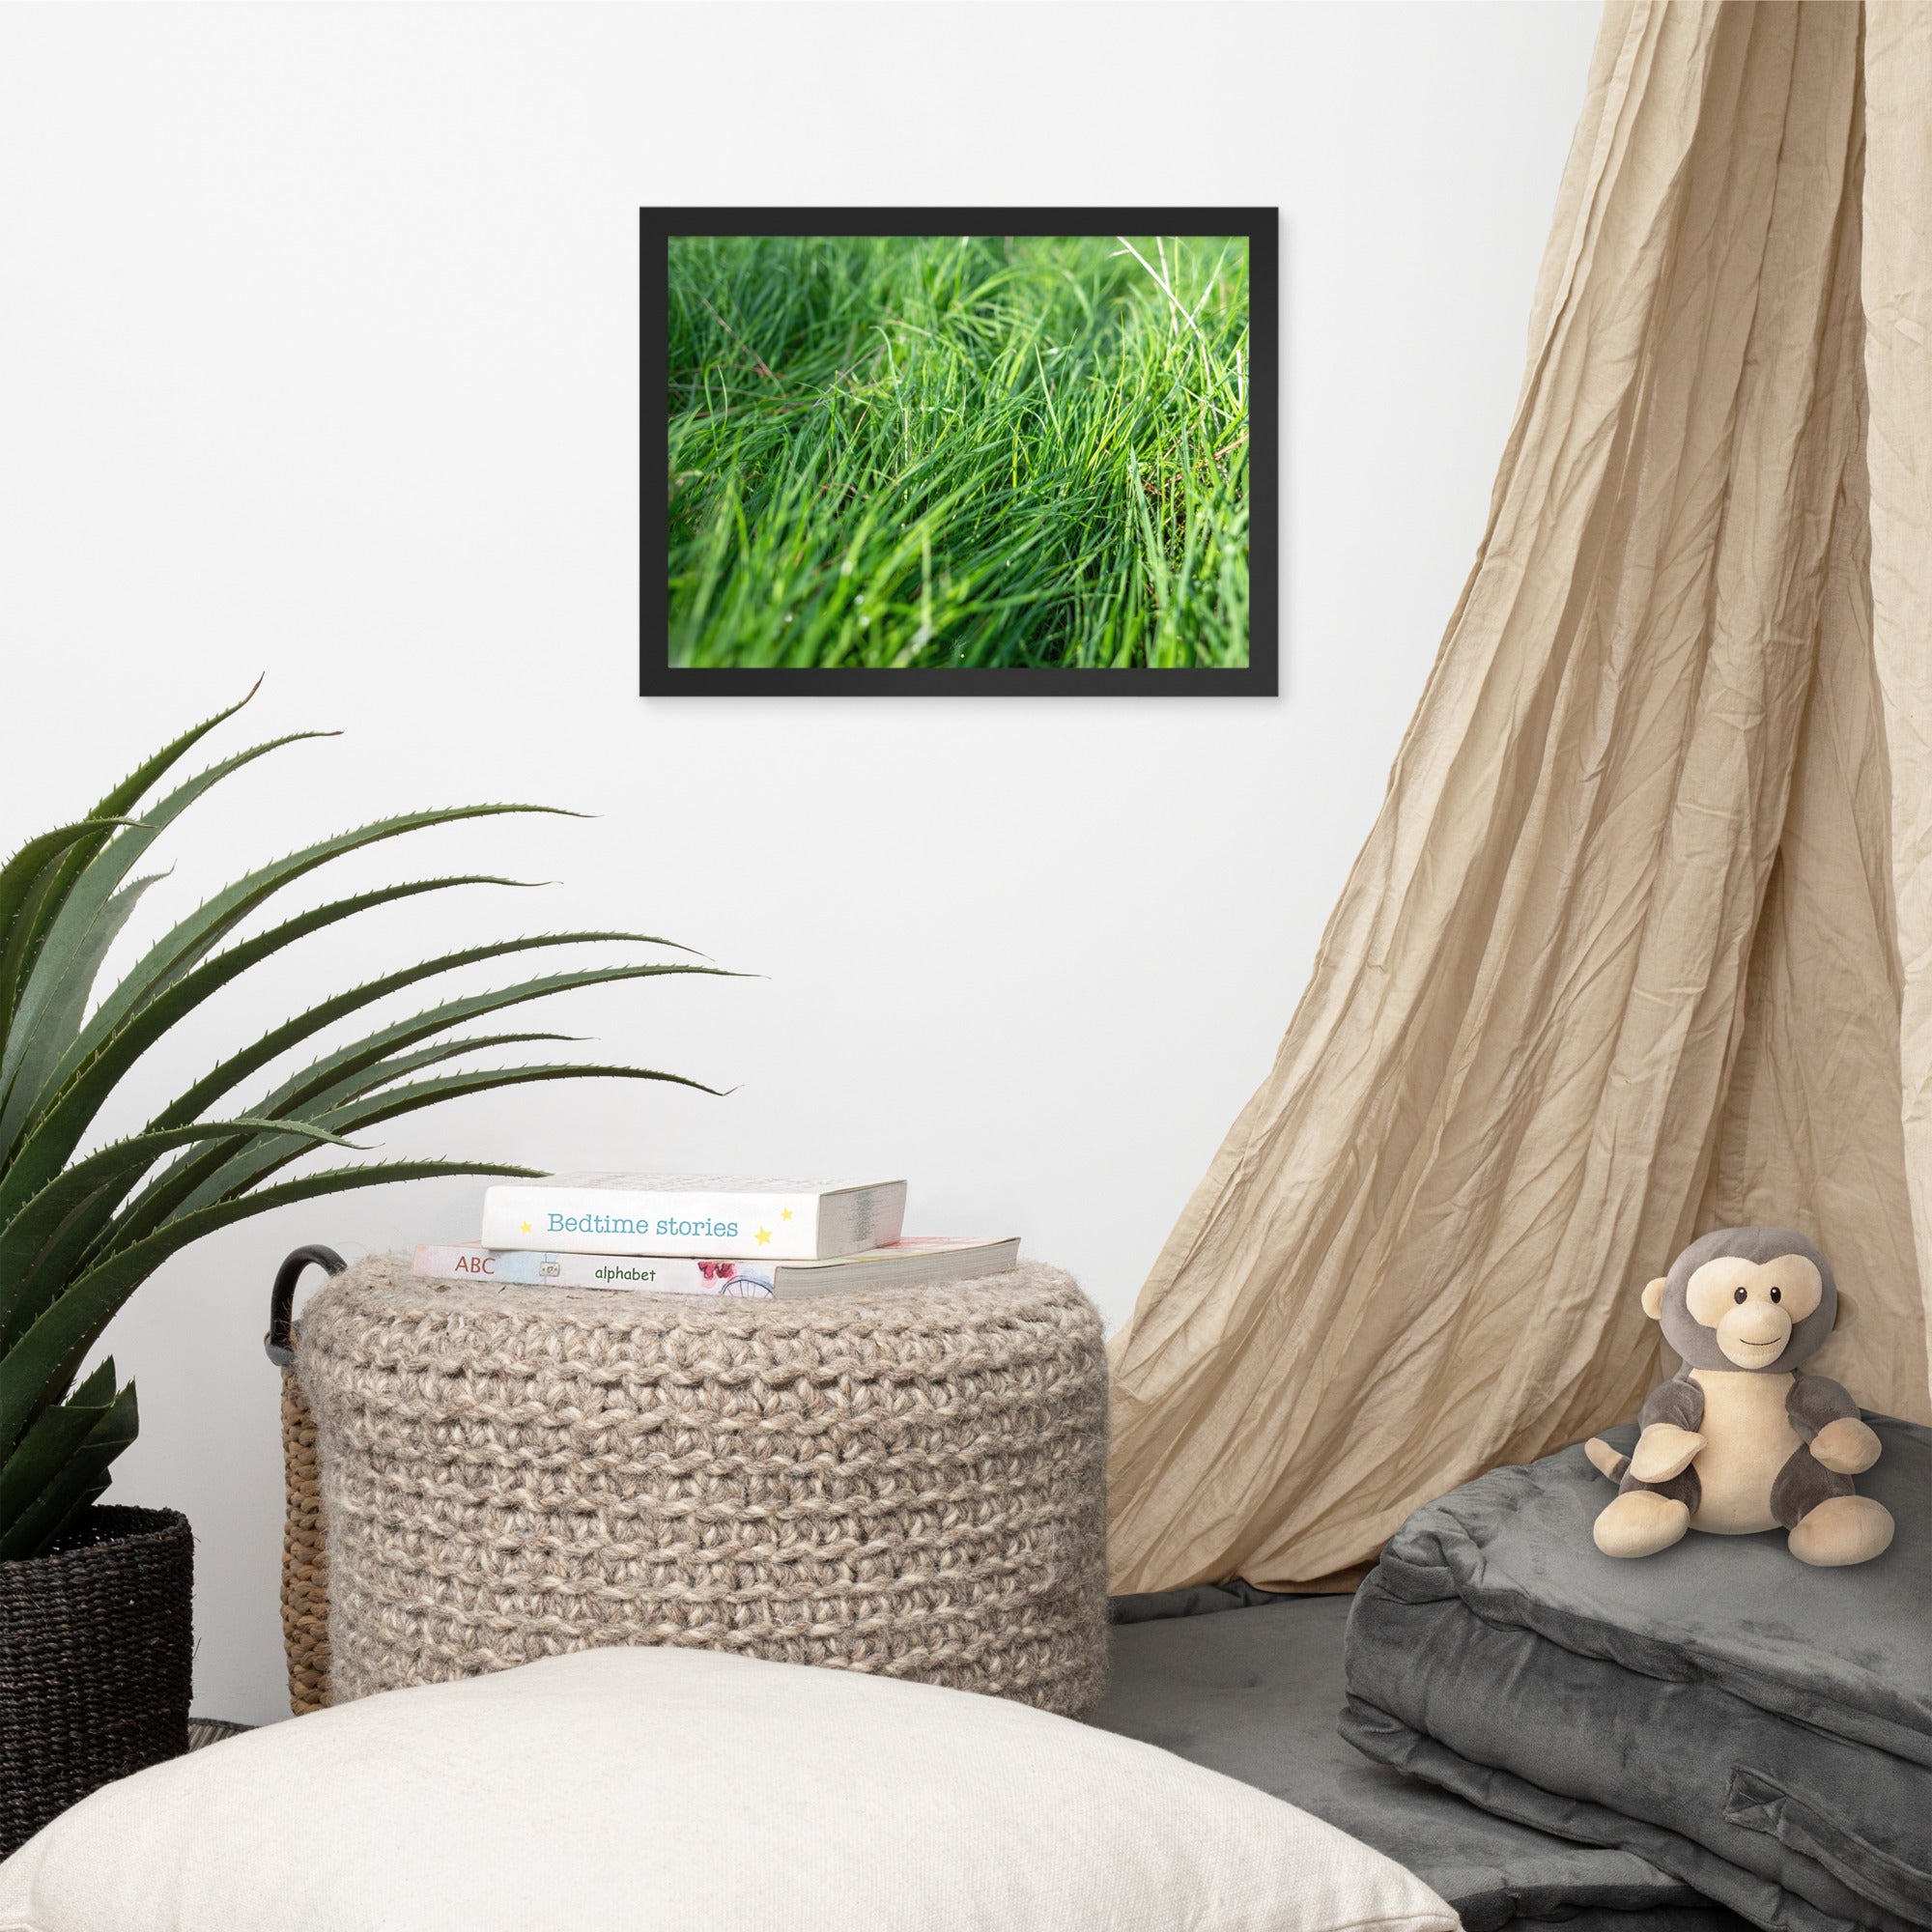 Photographie de 'Le Vent', montrant de l'herbe verte inclinée par une brise légère, encadrée dans un cadre en bois élégant.